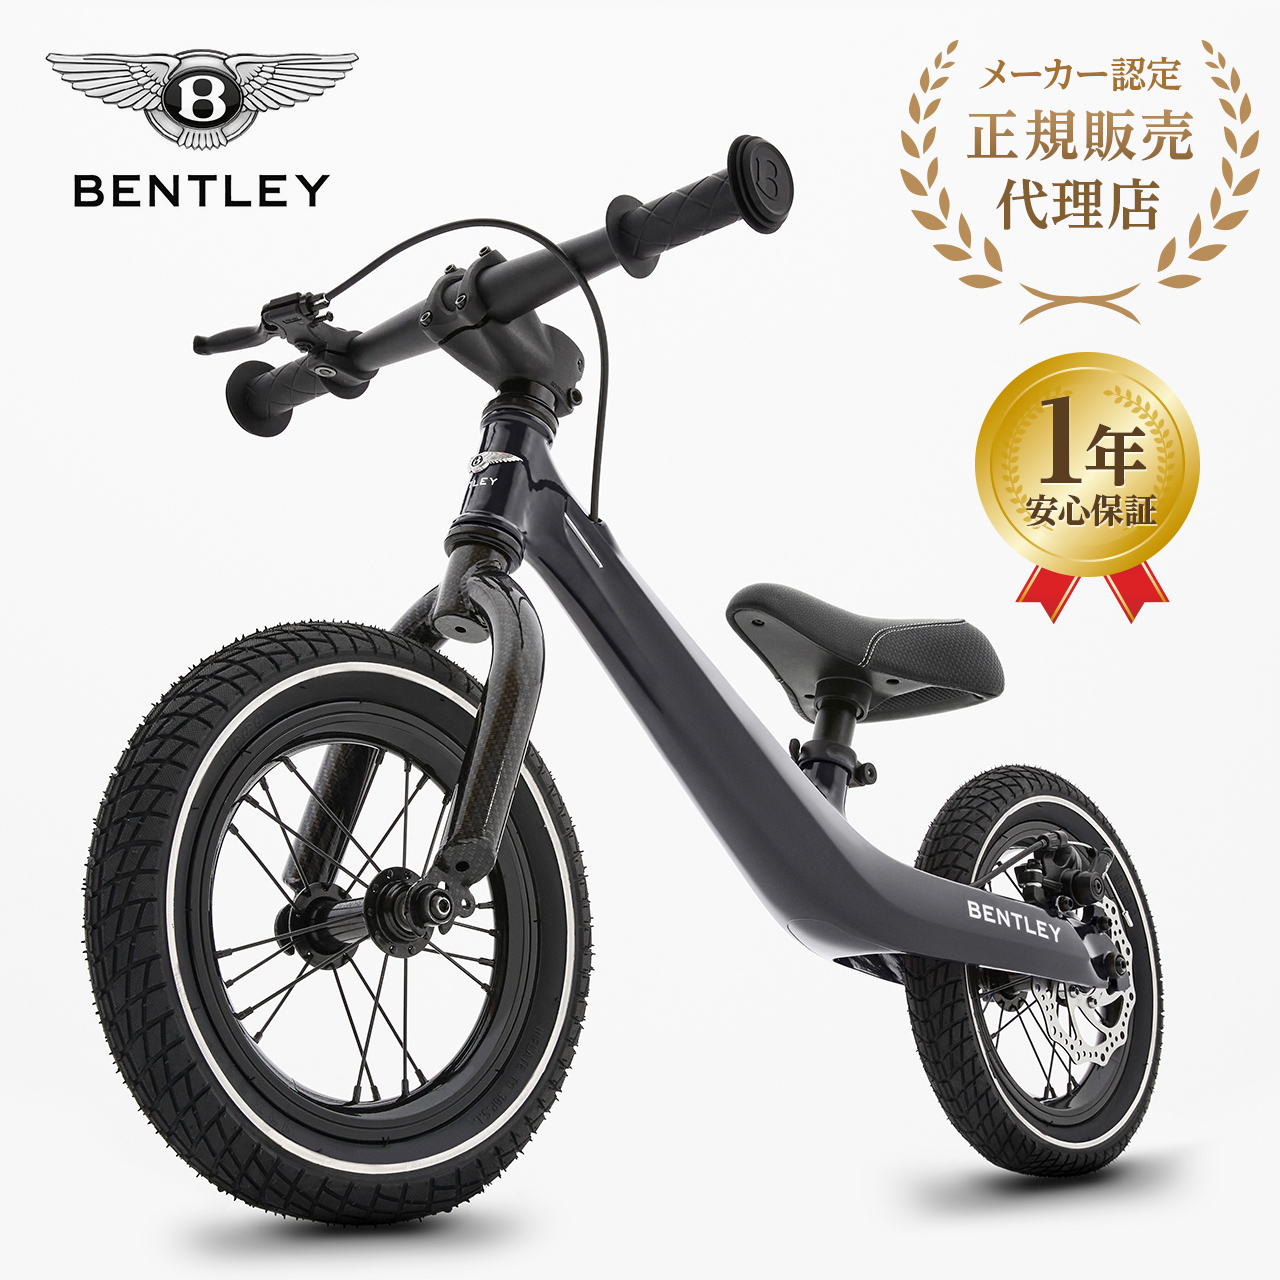 【正規販売店】 Bentleyバランスバイク ベントレー 3歳 誕生日 クリスマス プレゼント キックバイク キッズバイク ペダルなし ブレーキ付き 黒 白 1年保証 yct｜youplus-corp